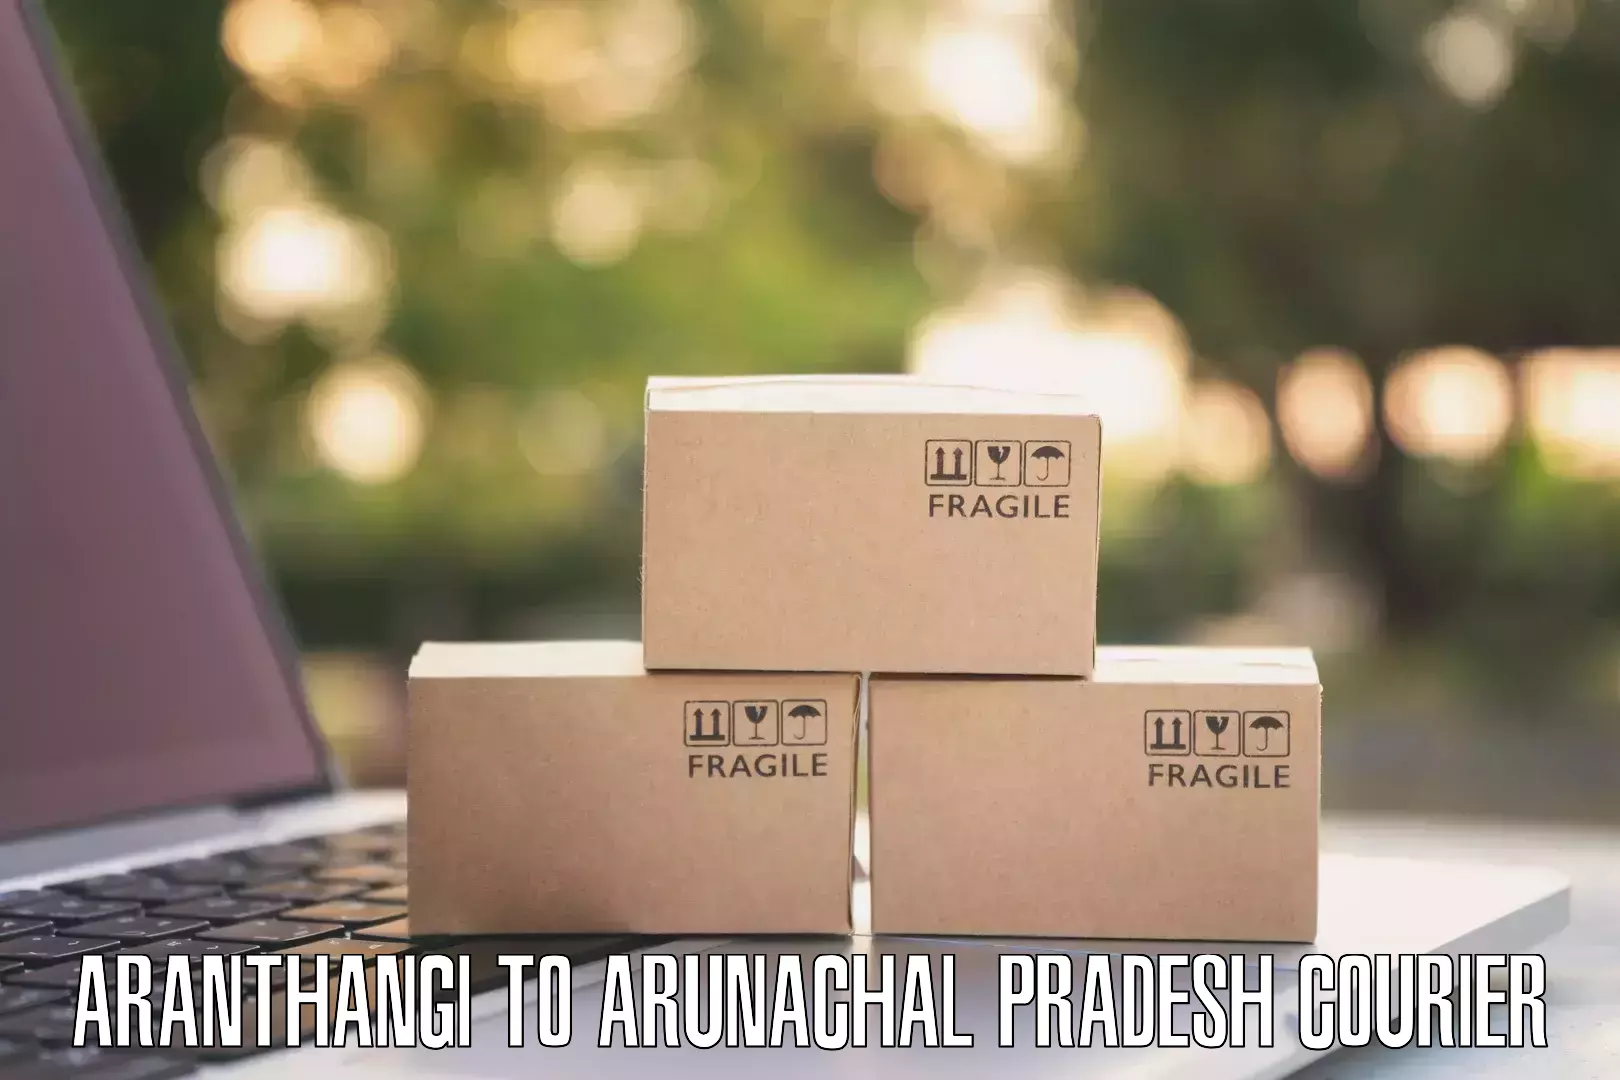 Specialized shipment handling Aranthangi to Lower Subansiri